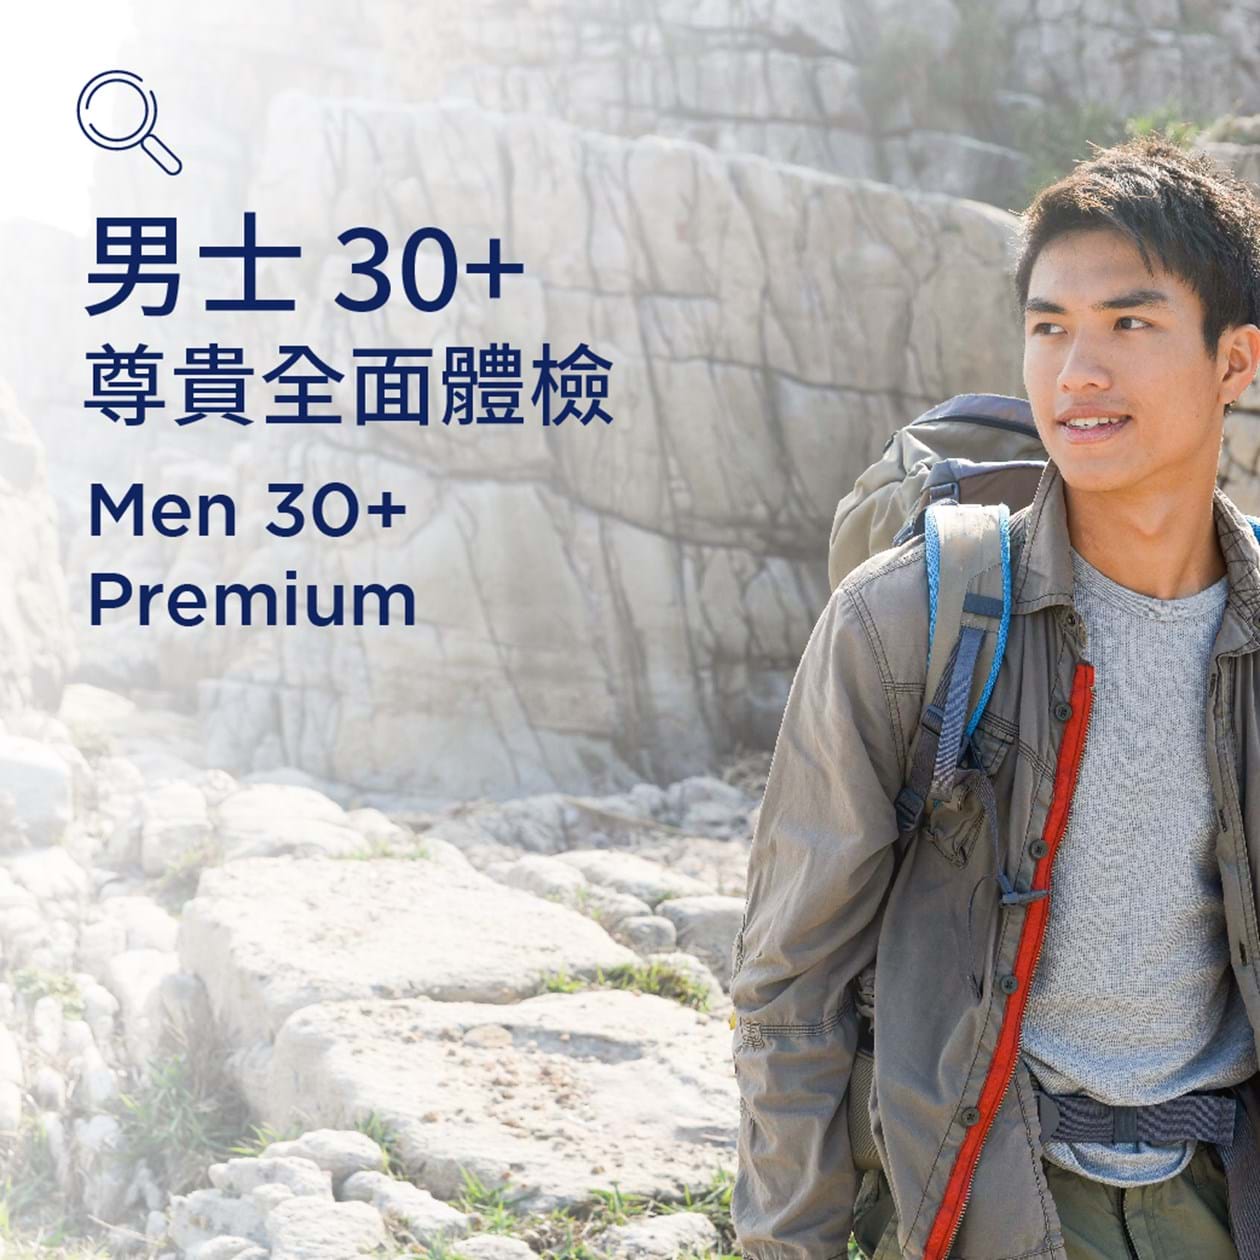 Men 30+ (Premium)